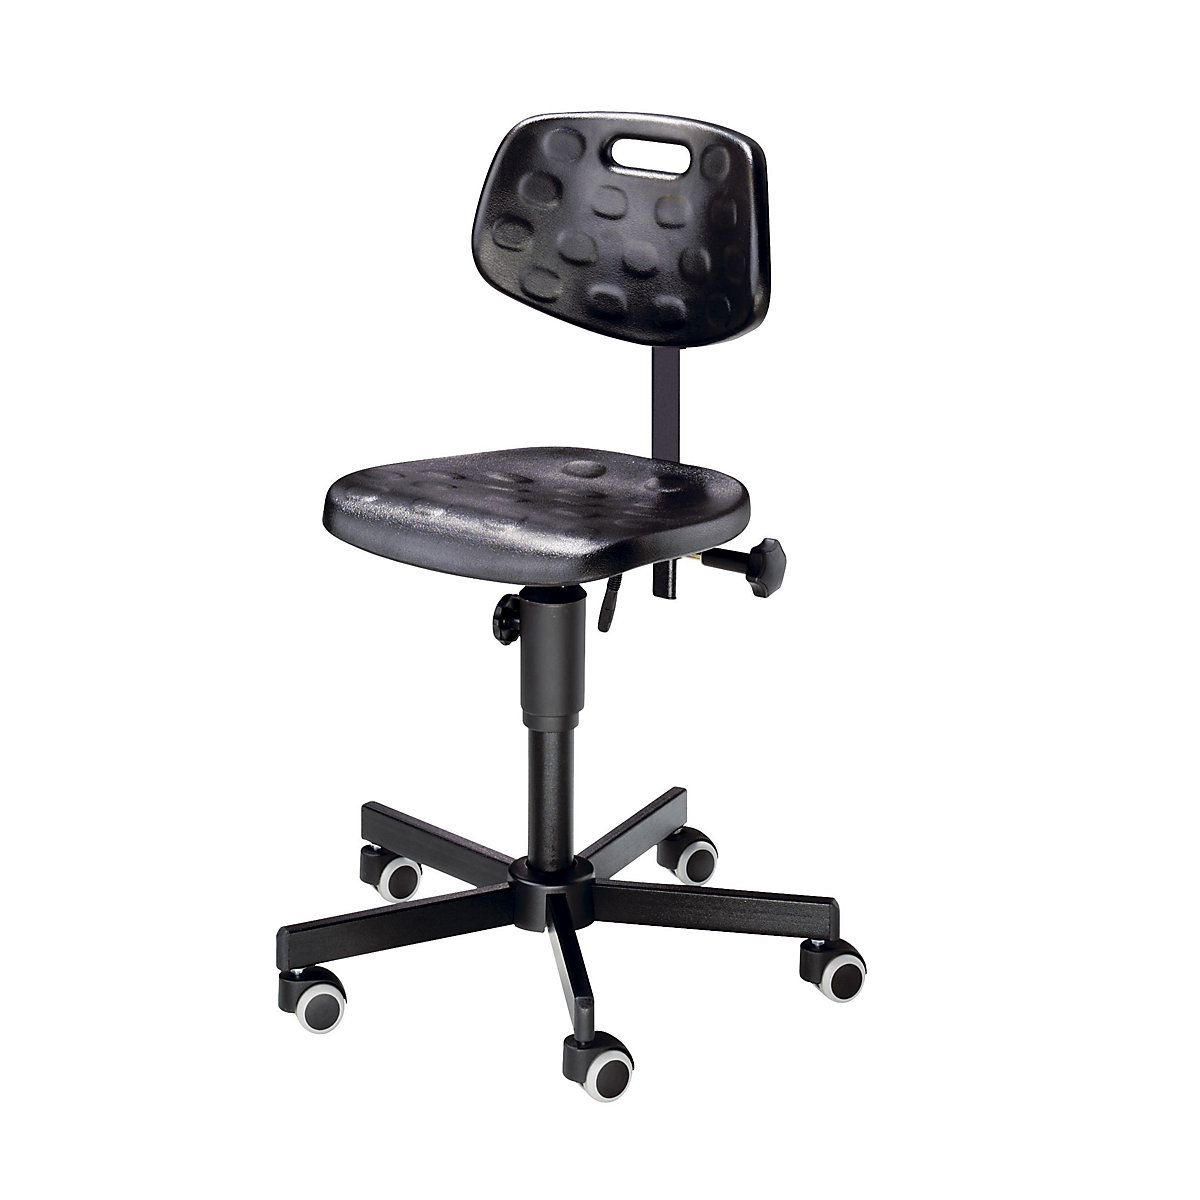 Pracovní otočná židle se sedákem z PU lehčené hmoty – meychair, bez nožní opěrky, s kolečky brzděnými v závislosti na zatížení-1